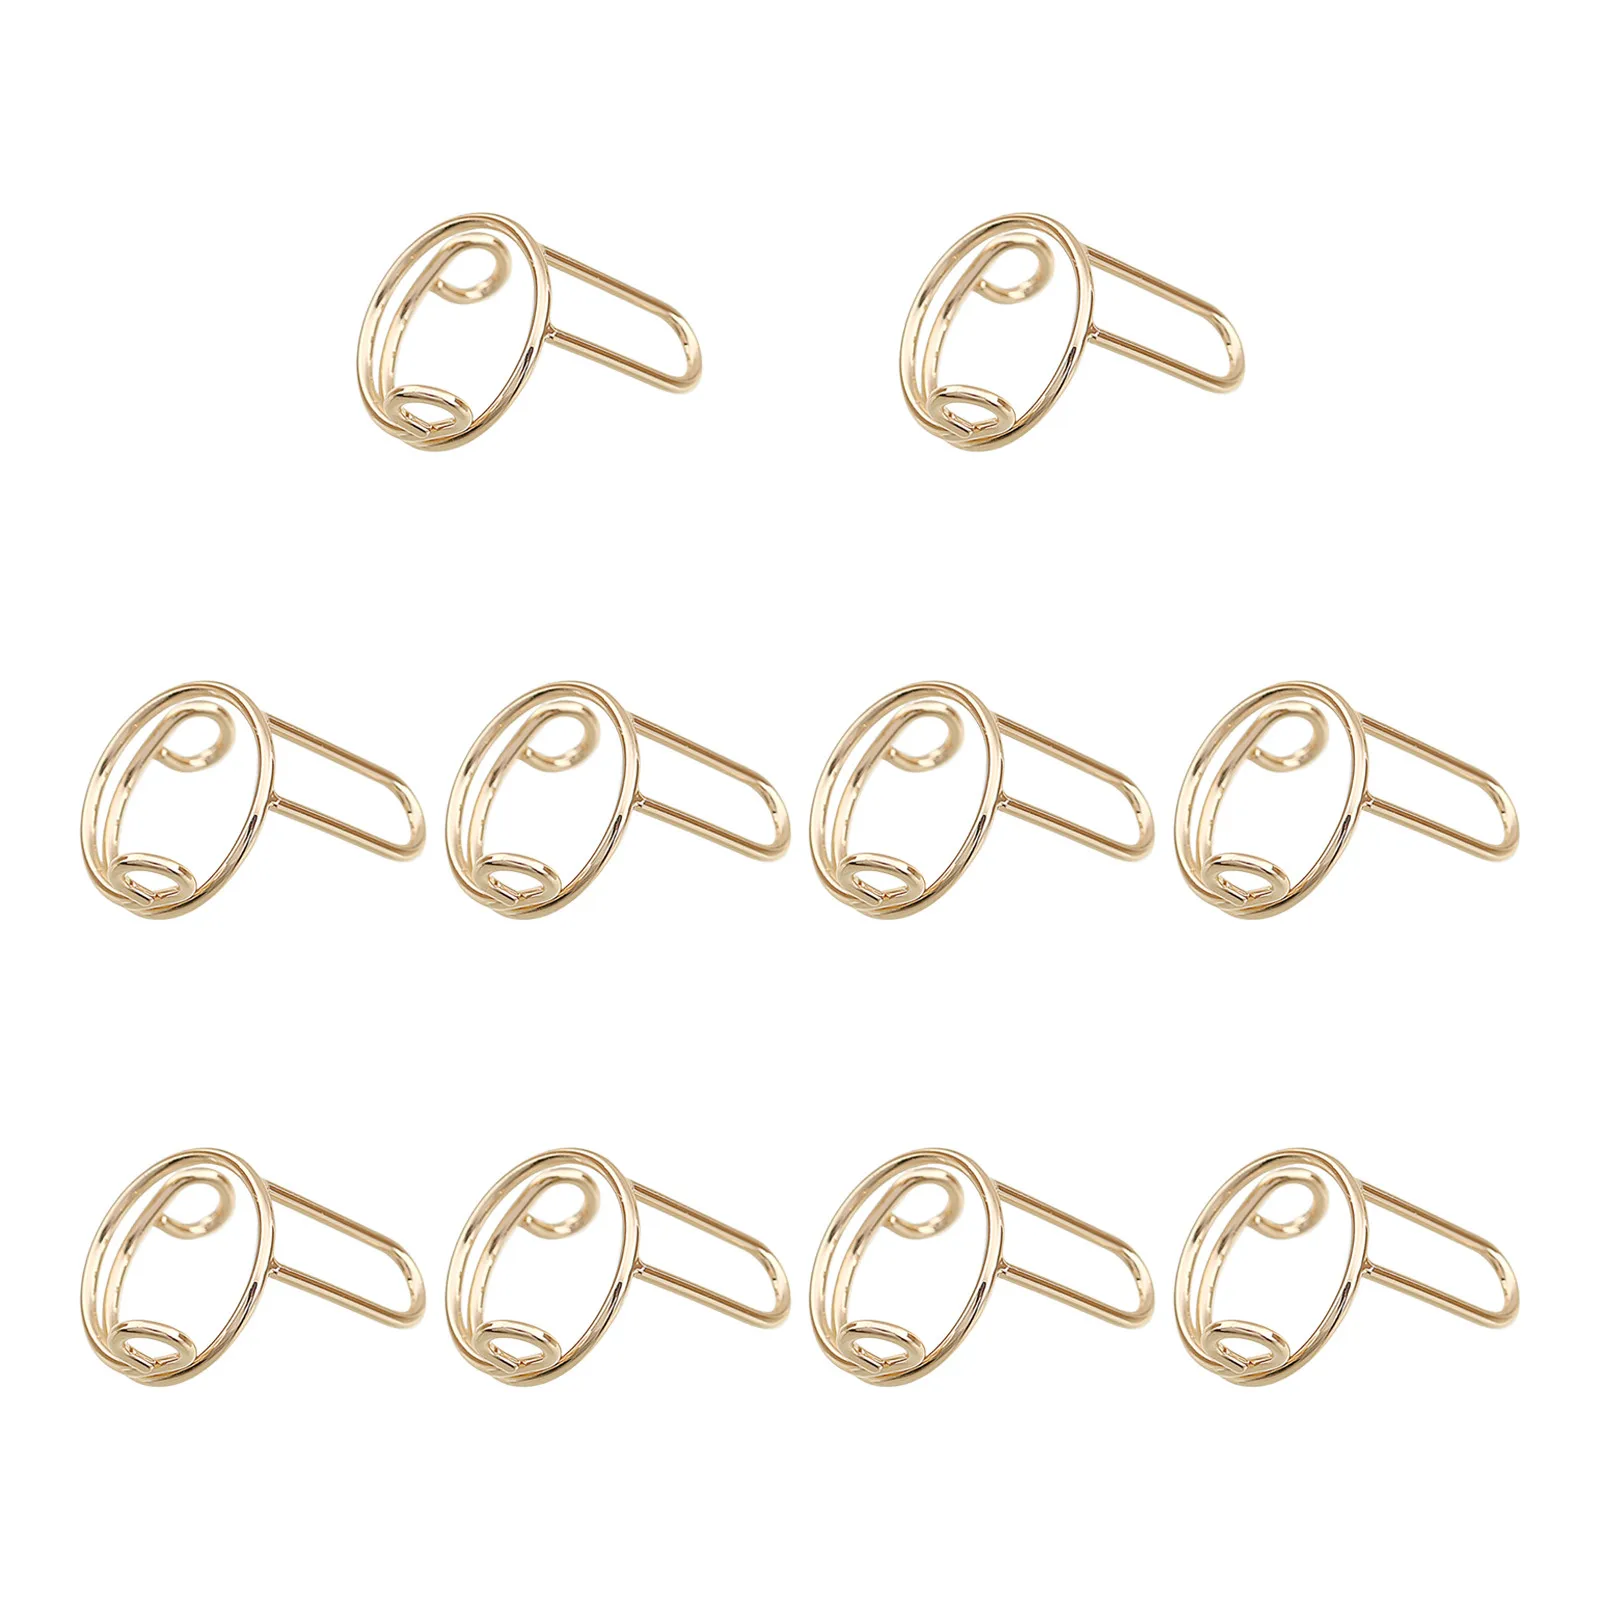 Wudu Nail Rings Non Tarnish 10PCS Adjustable No Glue No Women Gift Ring Set For HALAL NAILS Decoration (10 Pieces)